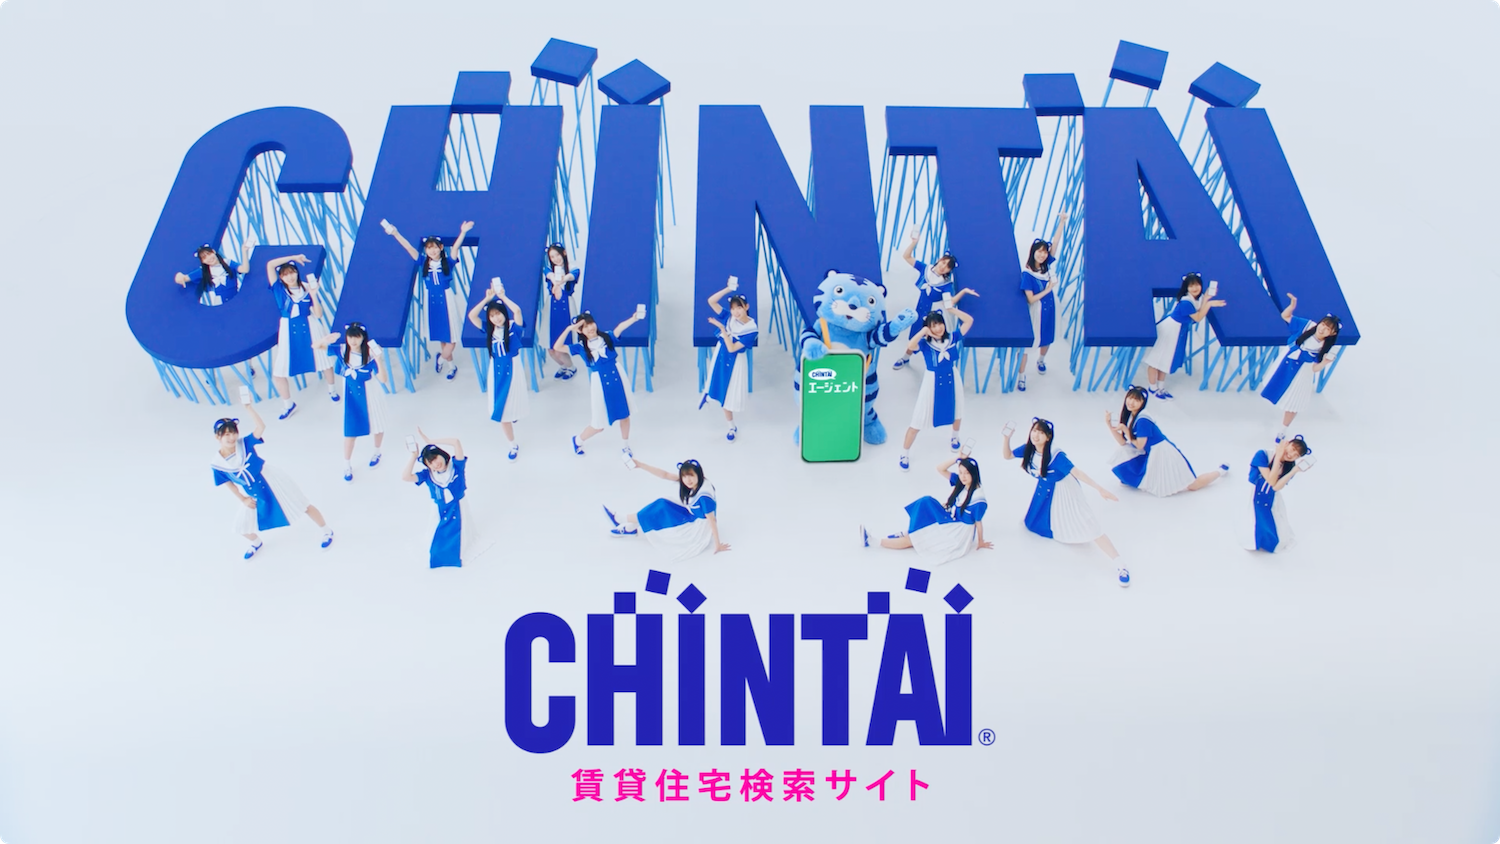 乃木坂46公式ライバル・僕が見たかった青空、CHINTAIの新イメージキャラクターに